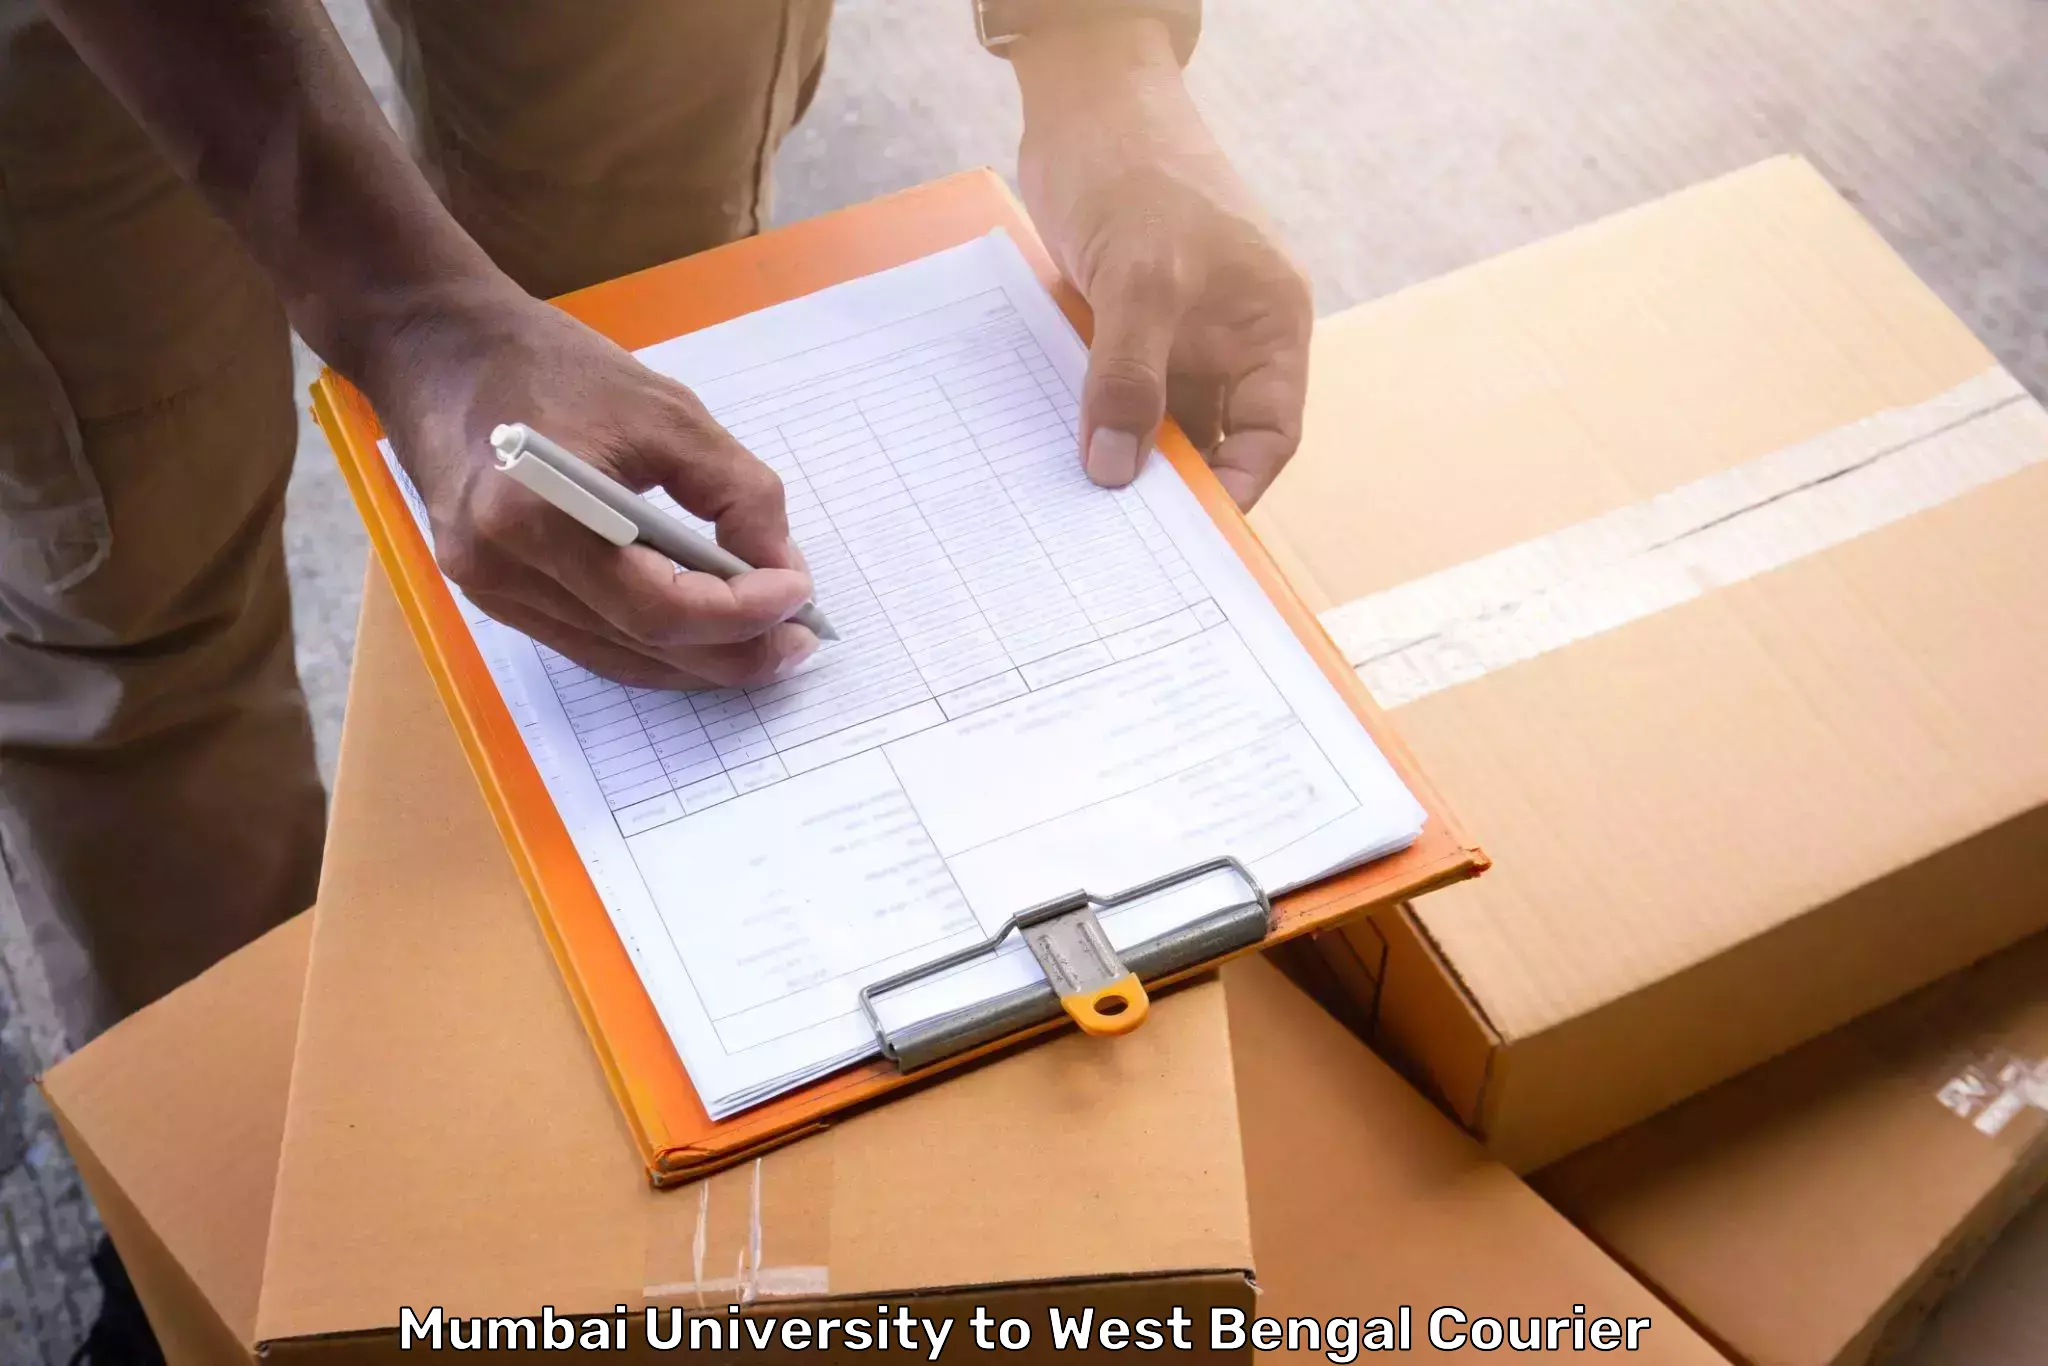 Baggage transport scheduler Mumbai University to Alipurduar